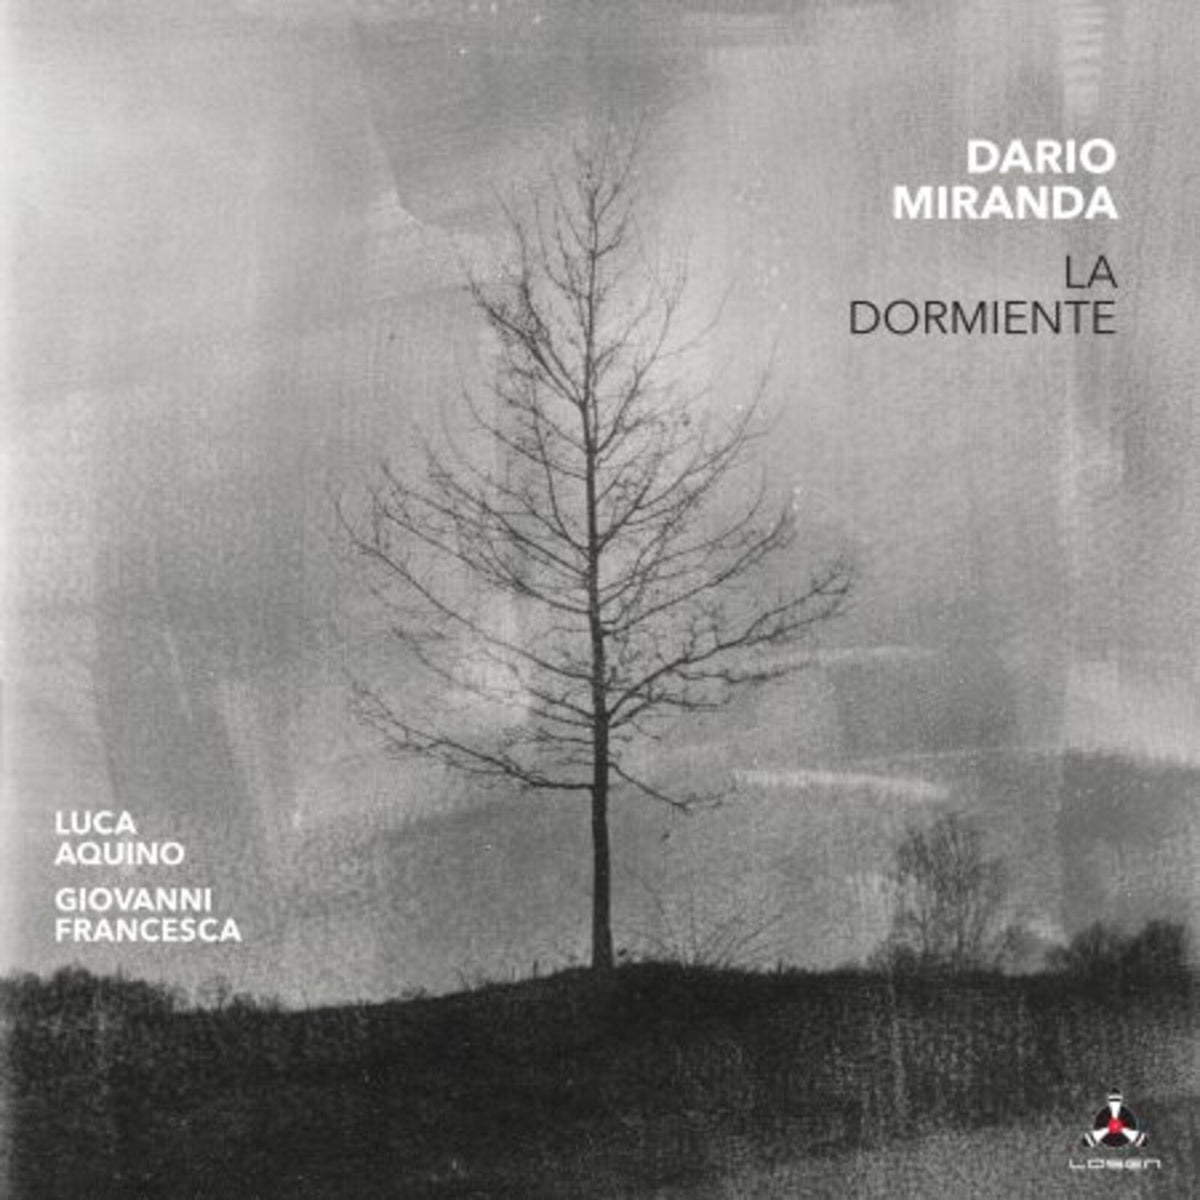 La Dormiente - Dario Miranda - LOS3002